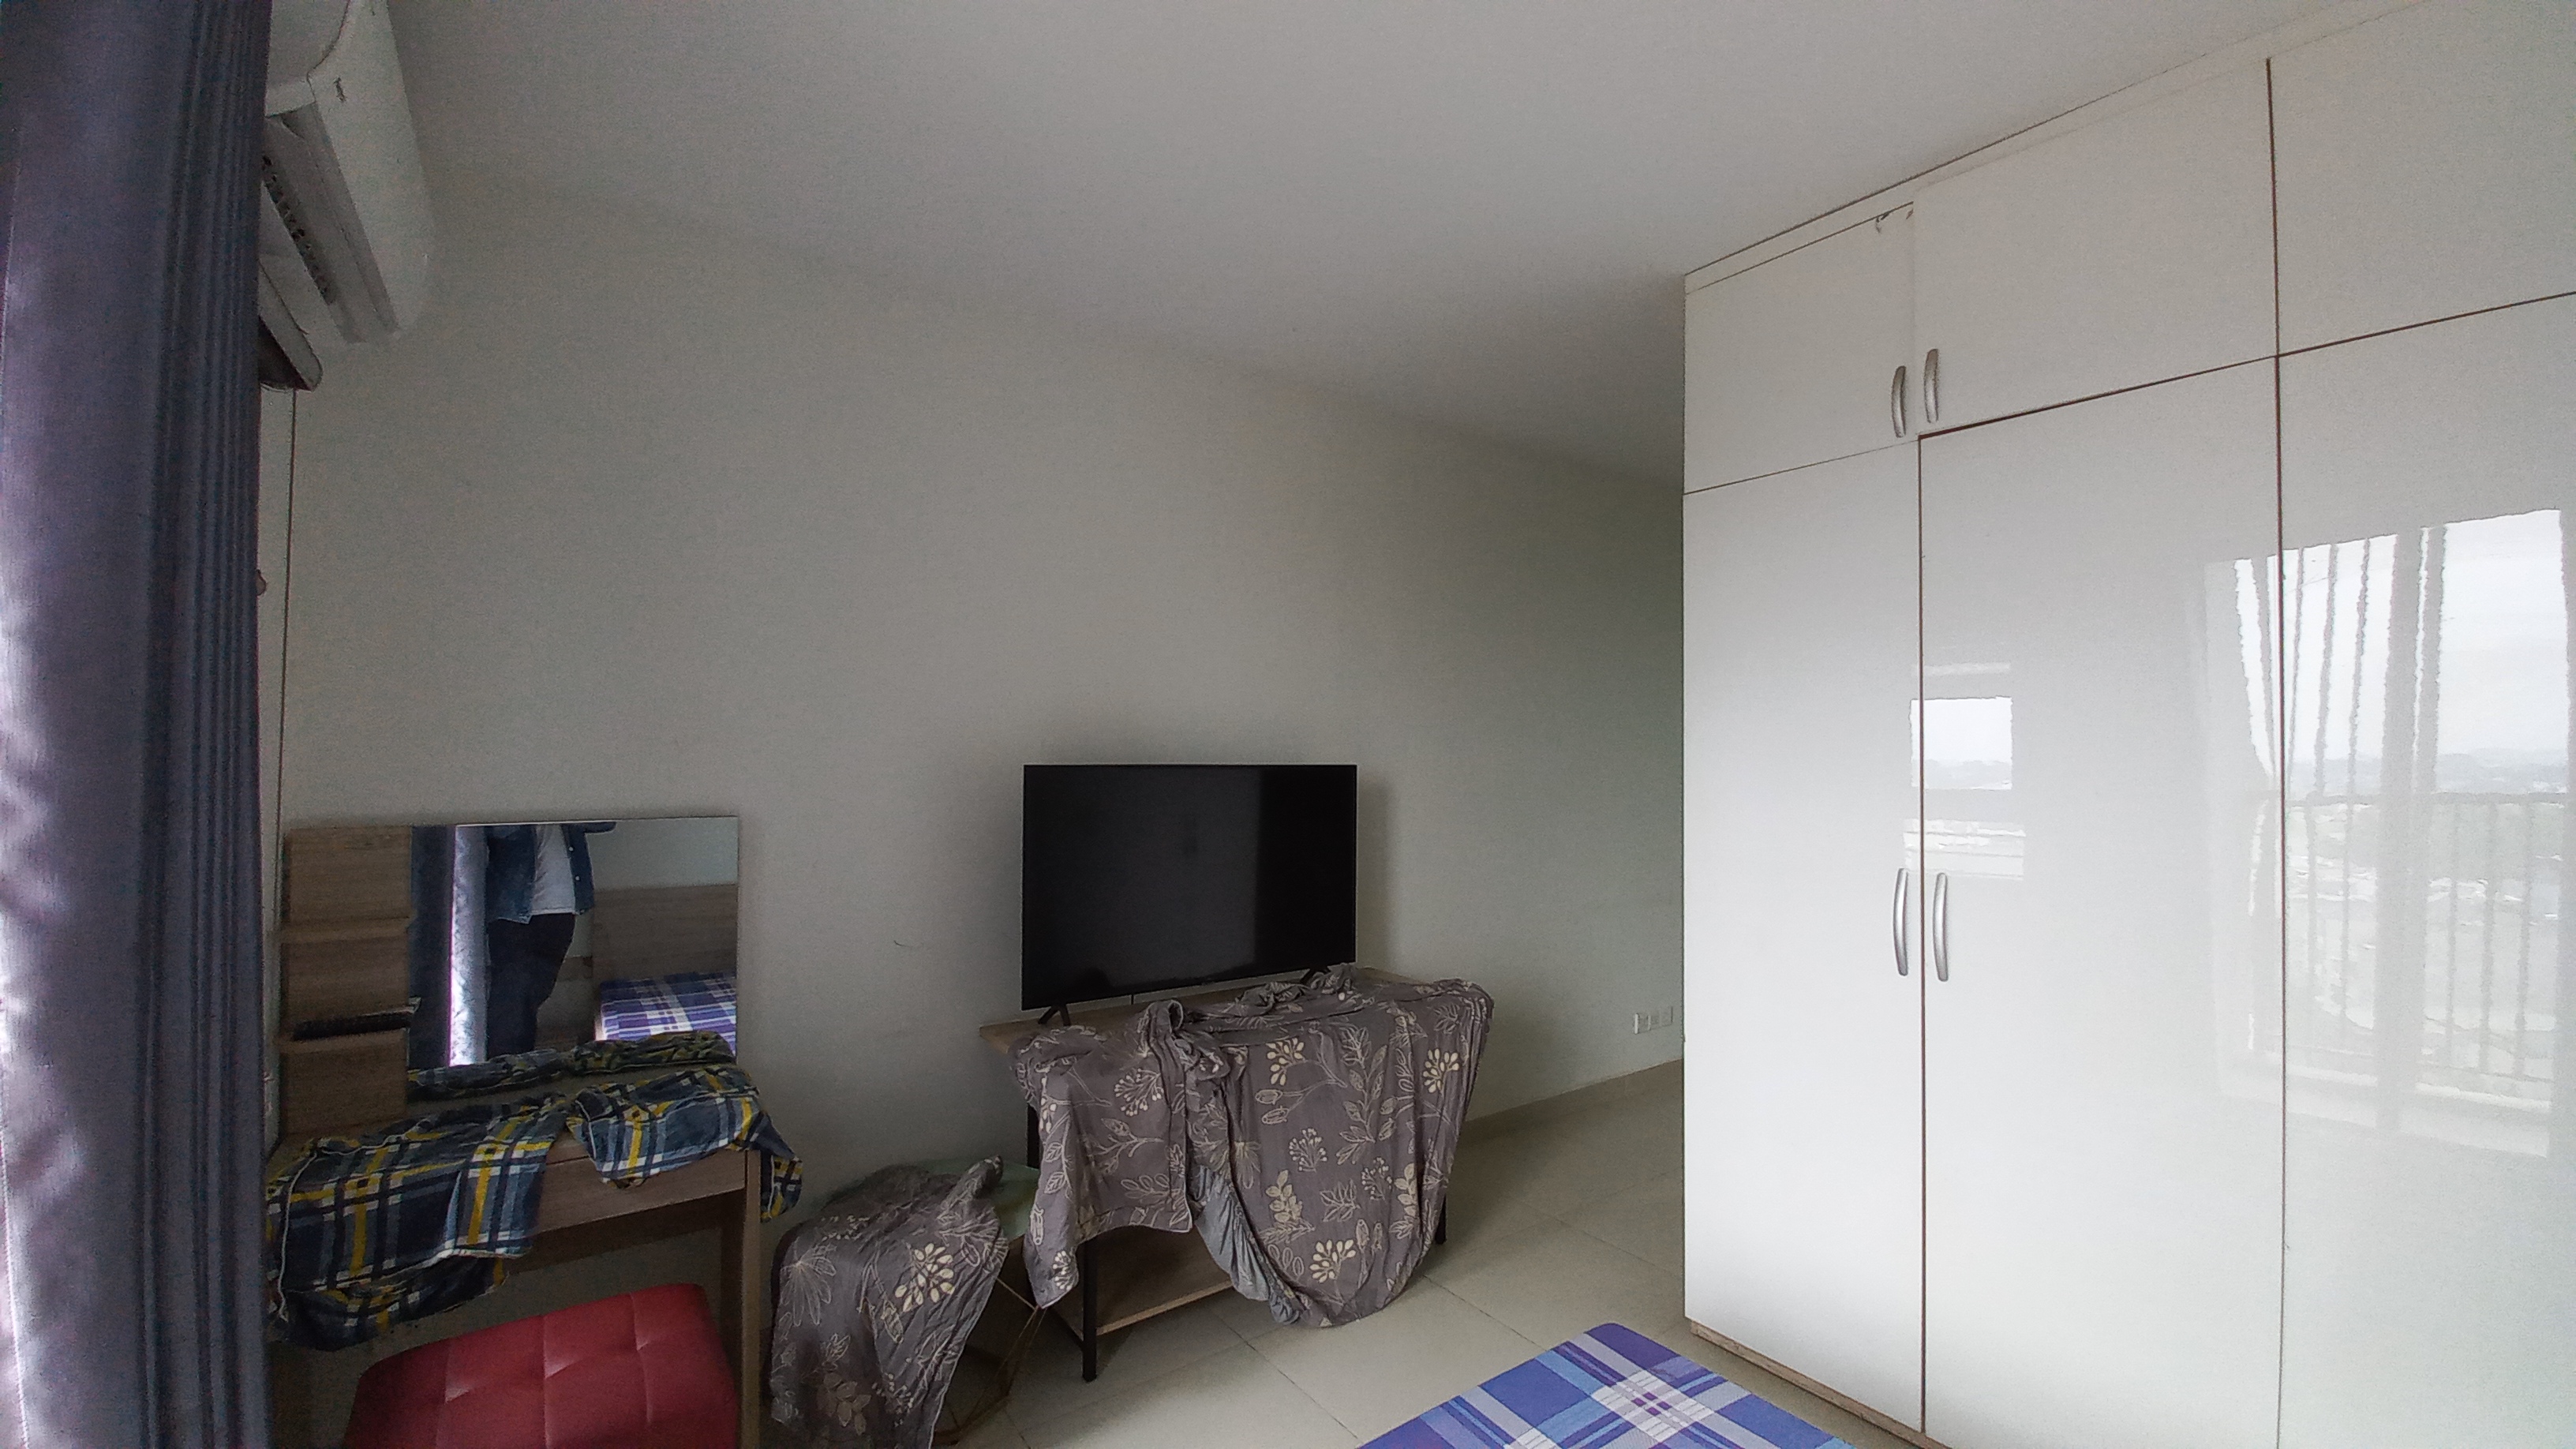 Cho thuê căn hộ Topaz Twins Biên Hòa 48m2 đầy đủ nội thất mới đẹp, giá 7,5tr/tháng